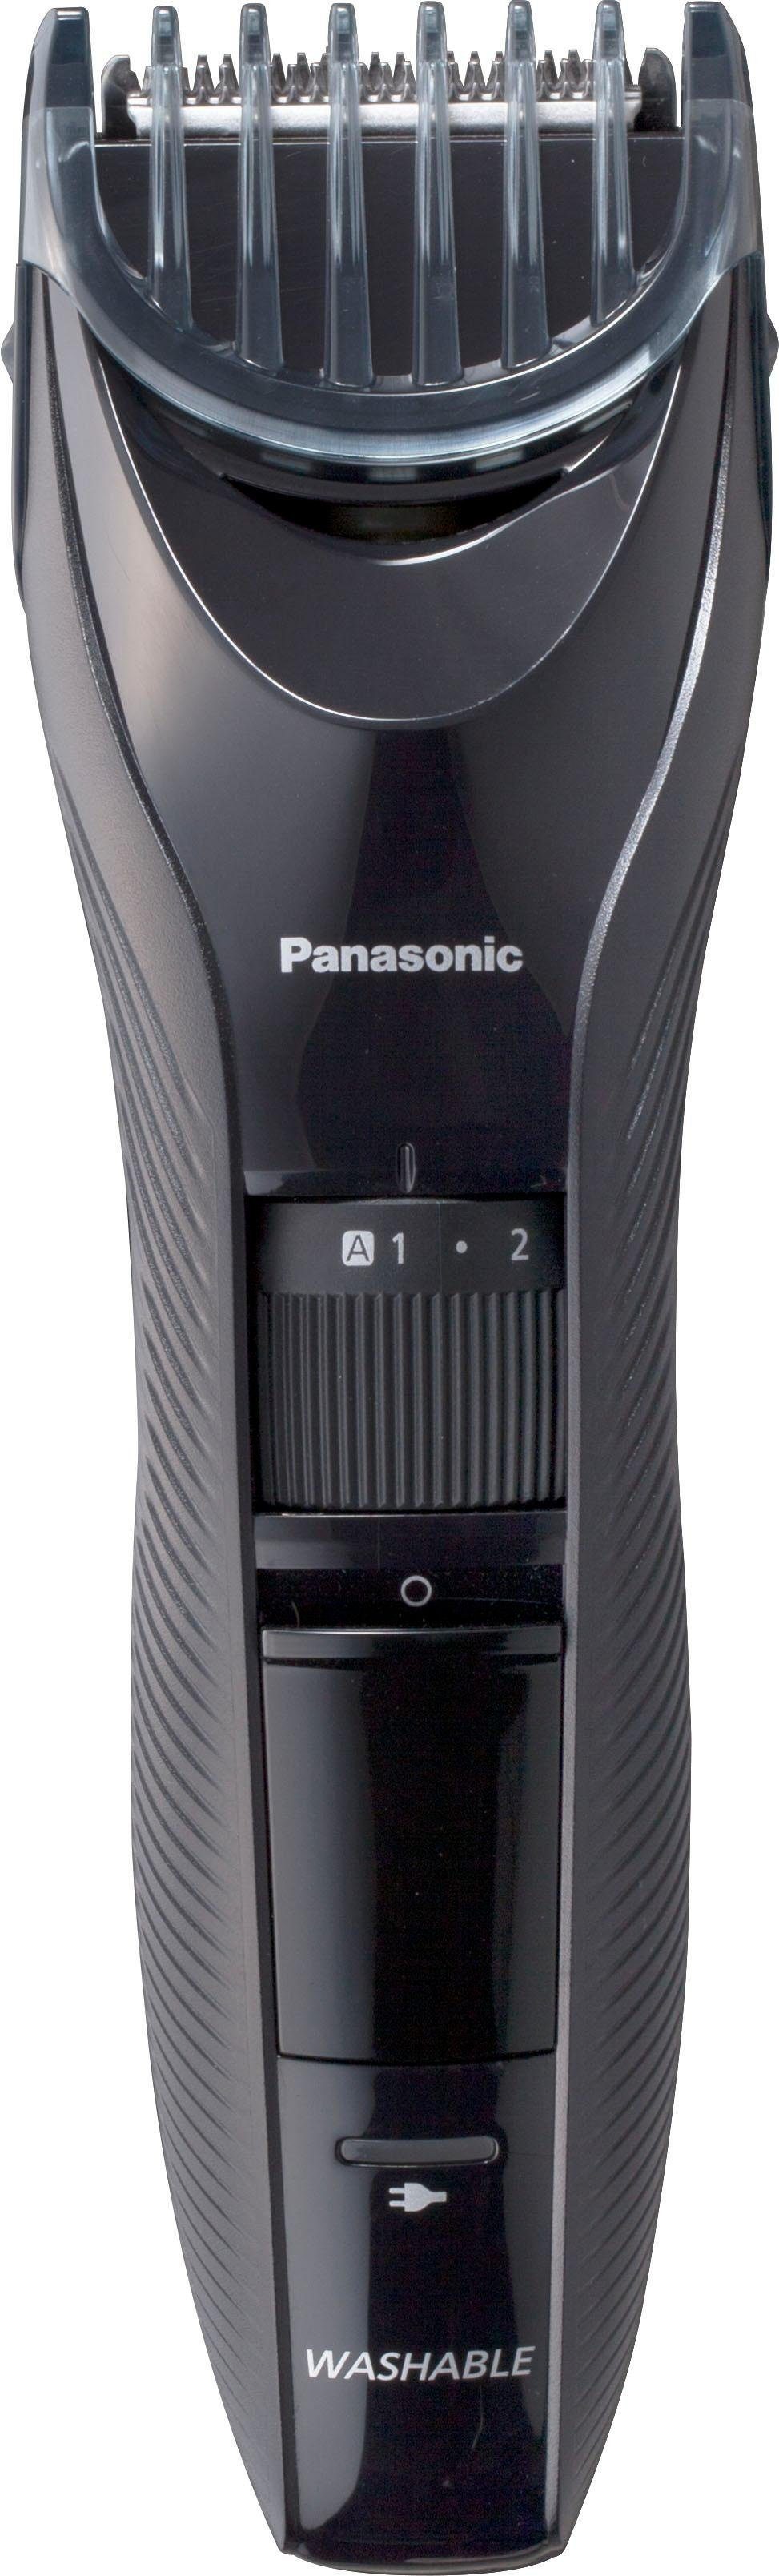 Panasonic Haarschneider ER-GC53-K503, mit Schnittlängen 19